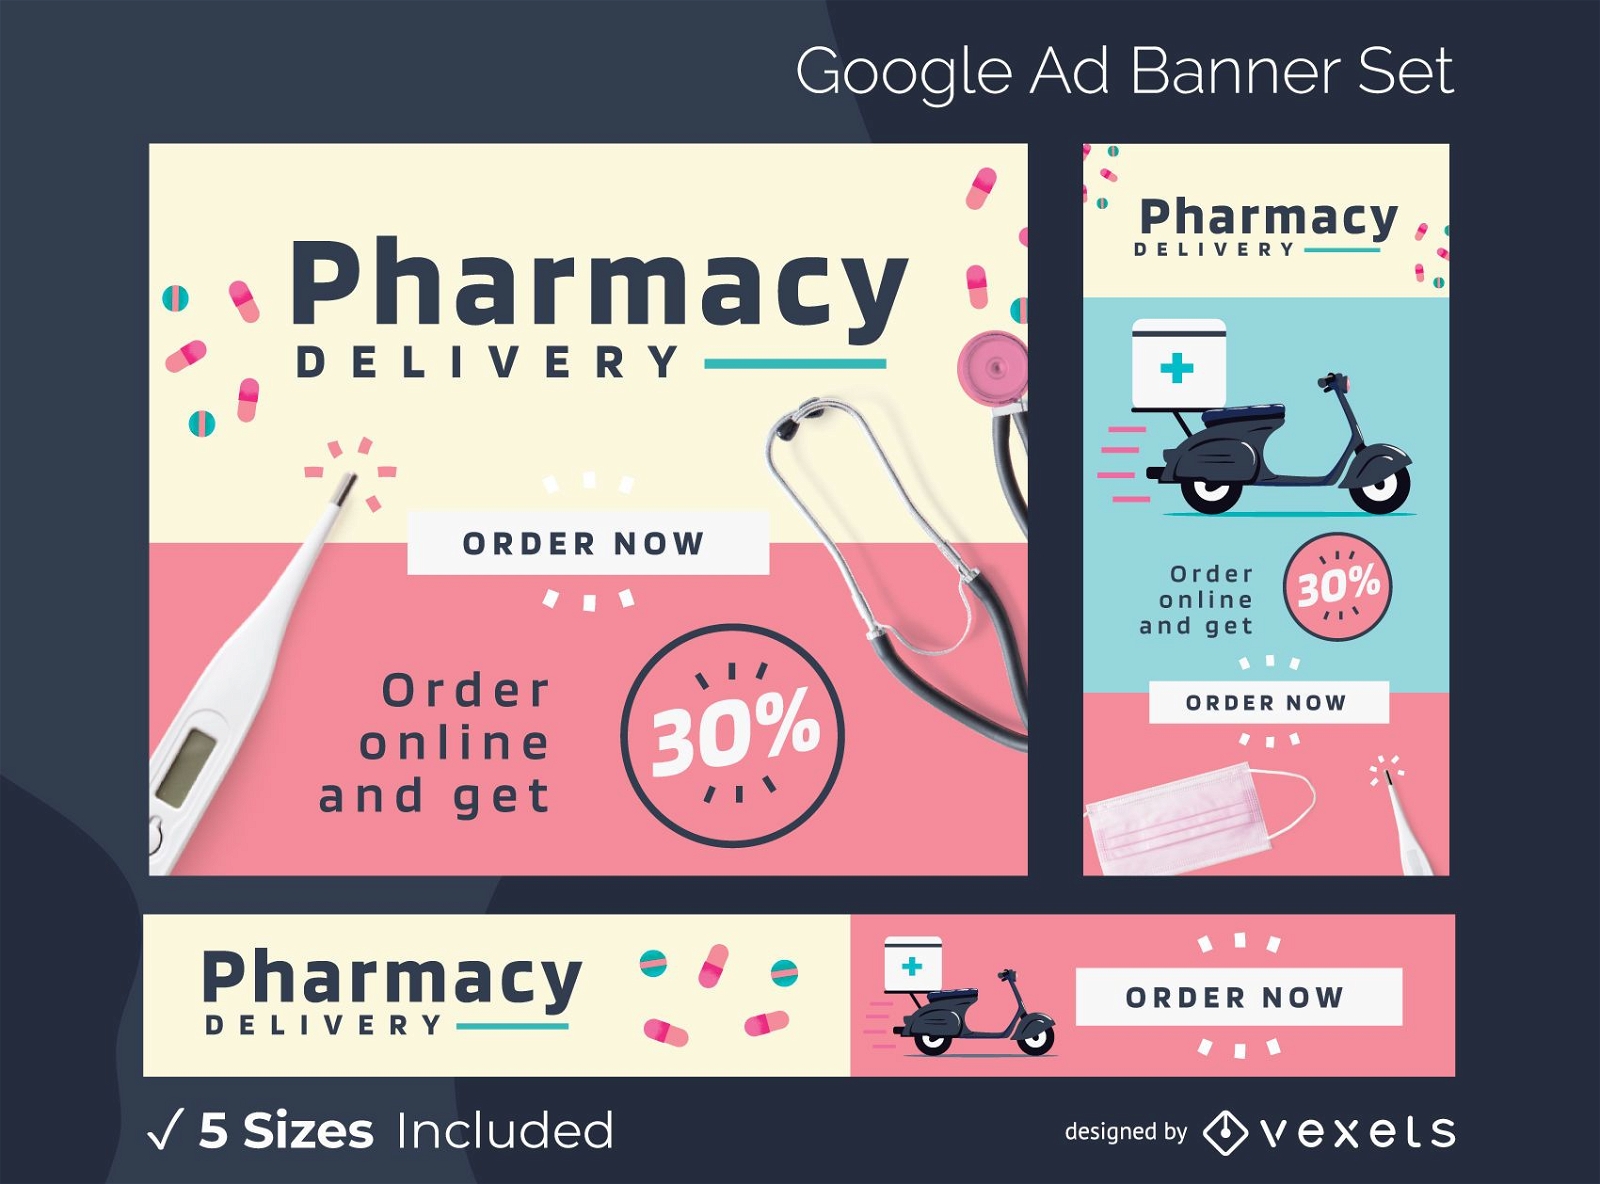 Pacote de banners do Google Ads para entrega em farmácias